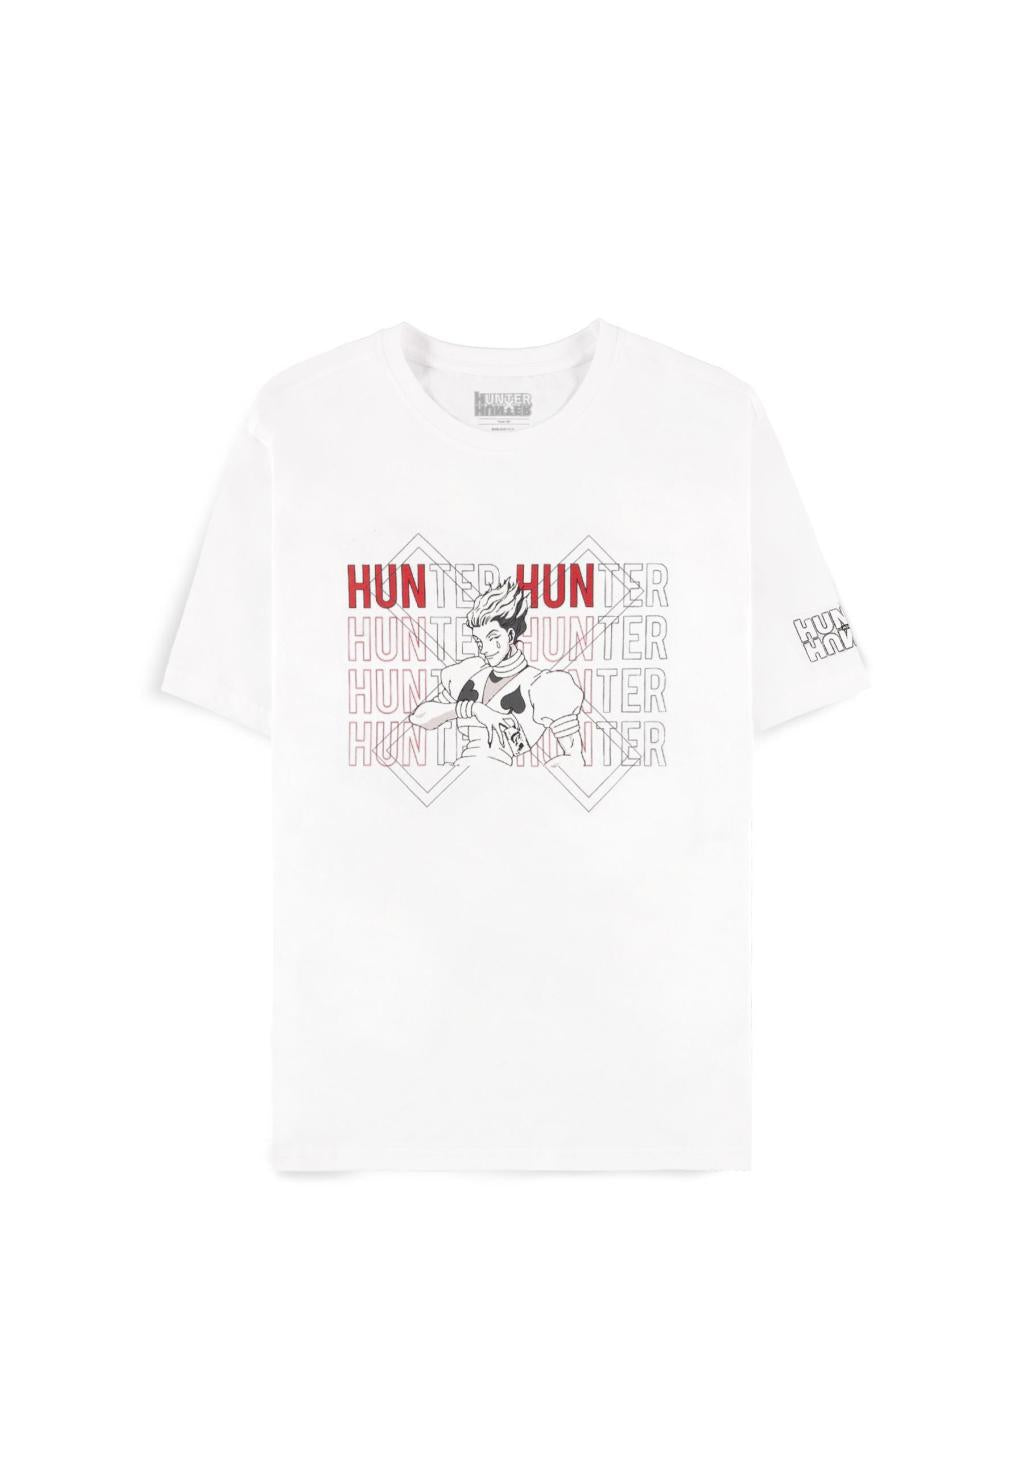 HUNTER X HUNTER - Hisoka - Damen T-Shirt (XXL)